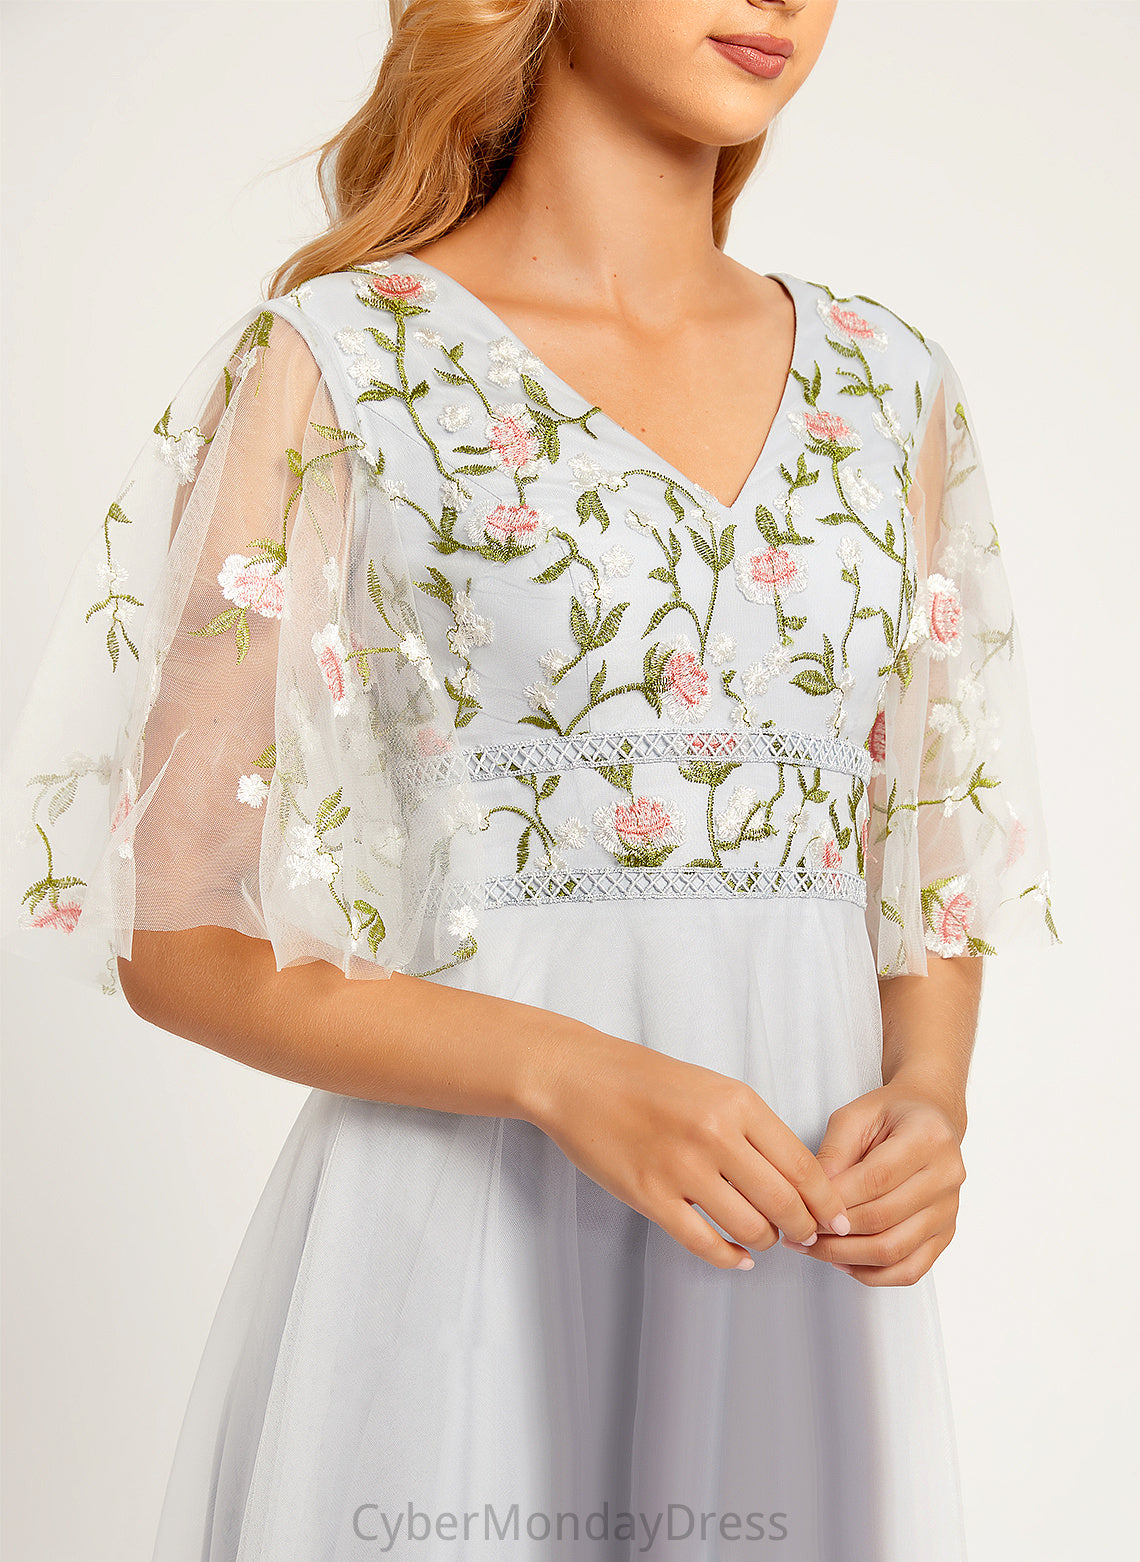 A-Line Neckline Silhouette V-neck Embellishment Fabric Length Floor-Length Flower(s) Cristina Bridesmaid Dresses